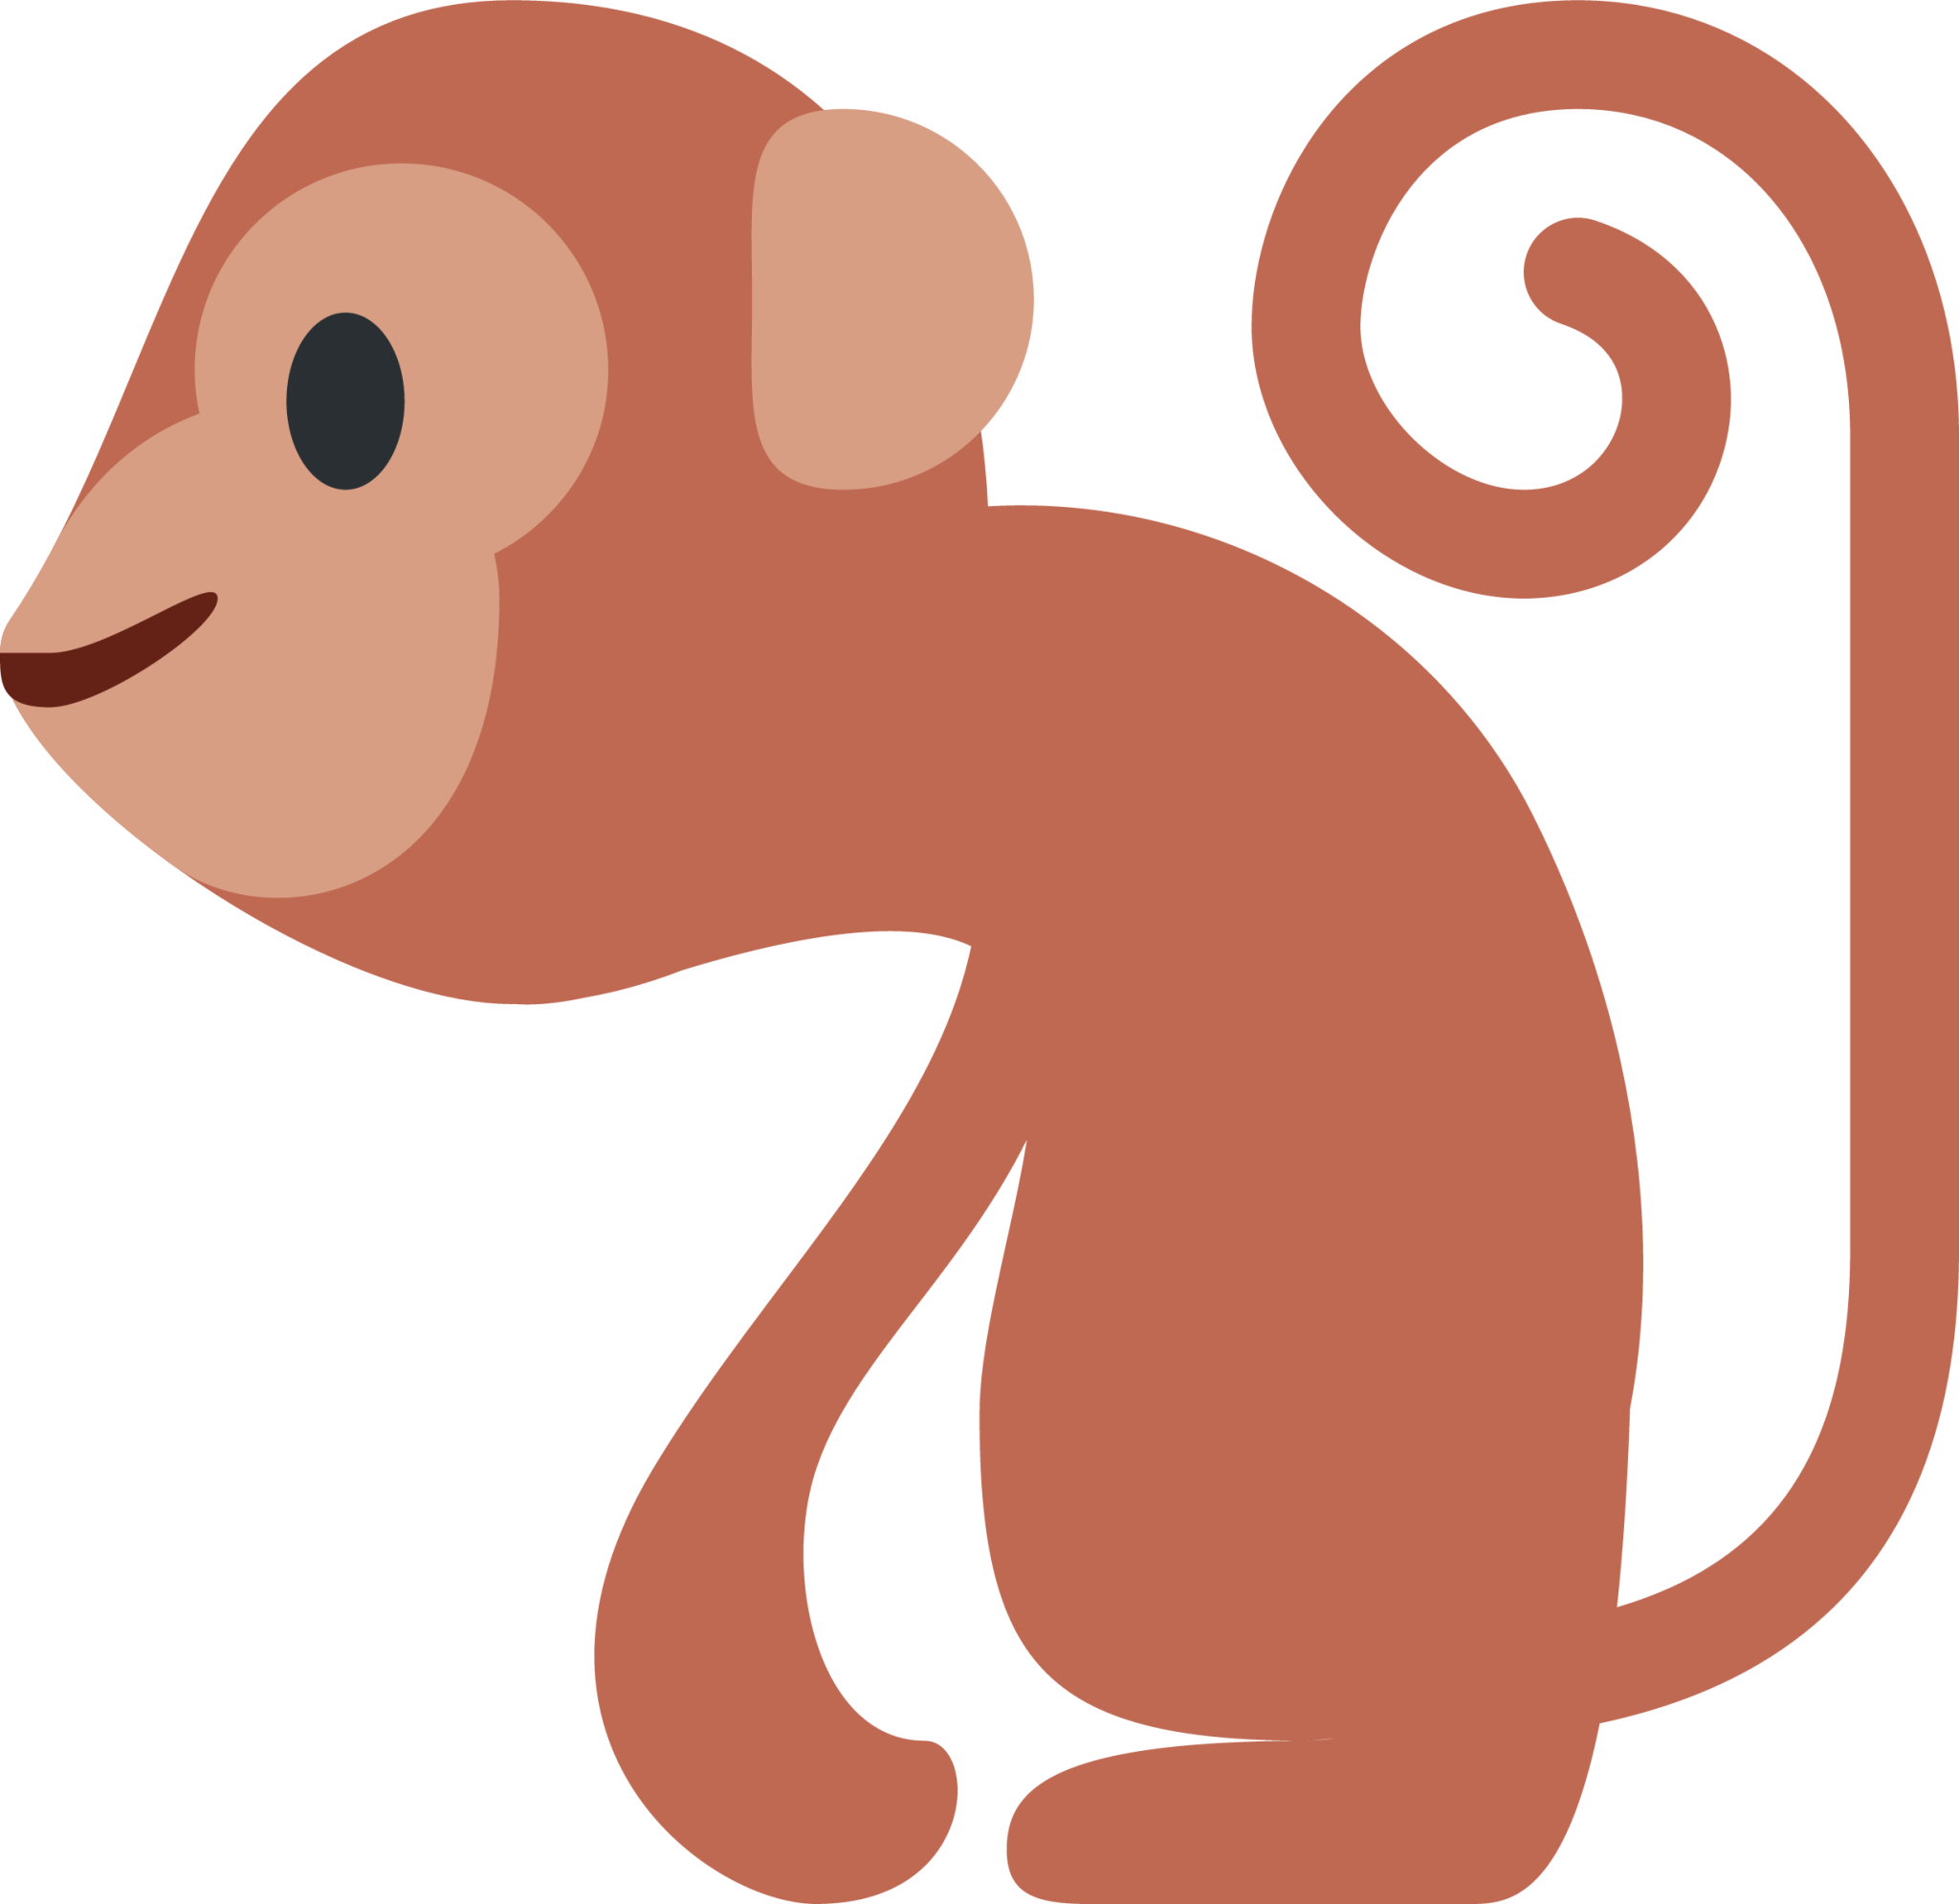 monkey emoticon facebook